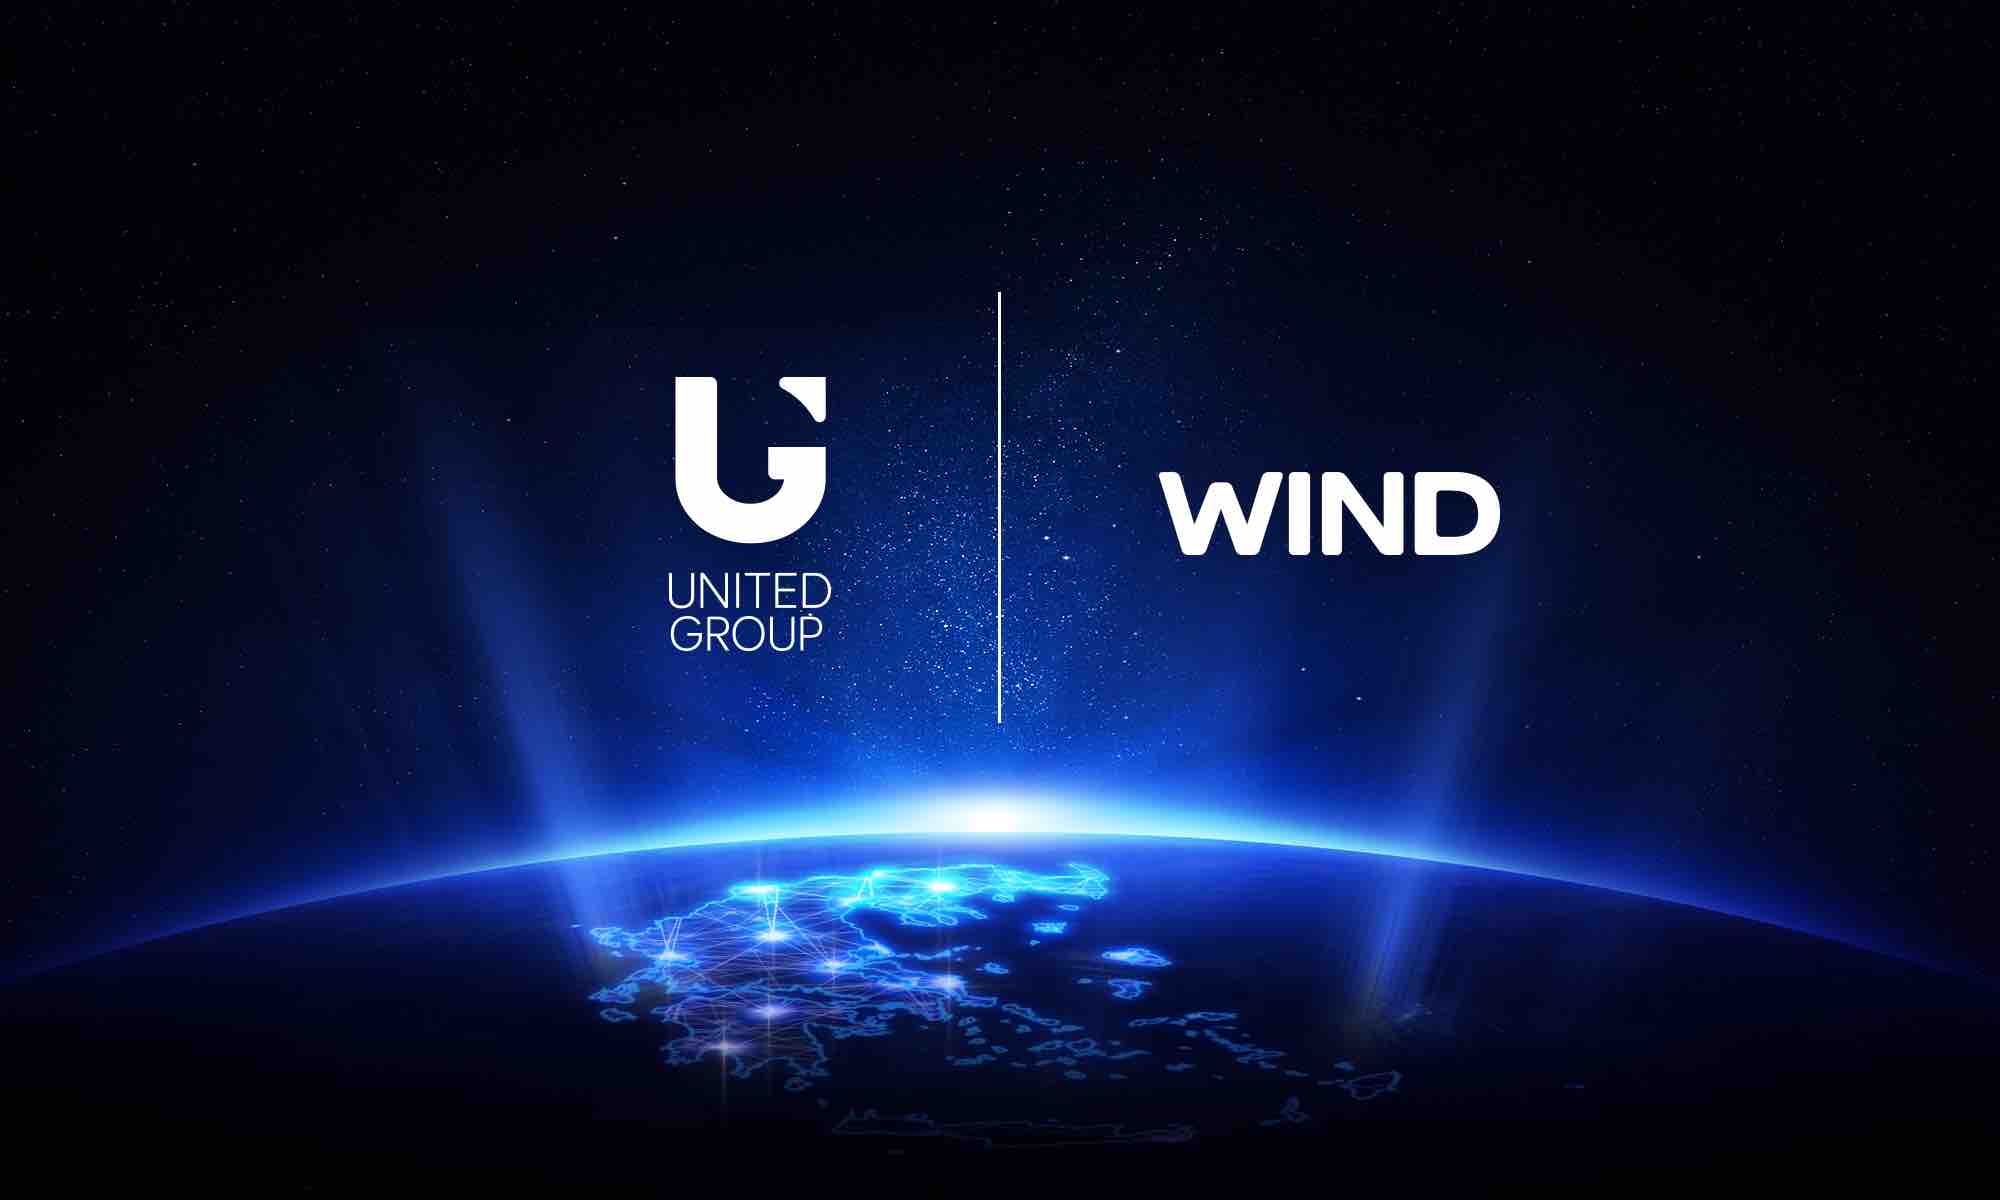 Η United Group, εταιρία της BC Partners, εξαγοράζει τη Wind Hellas